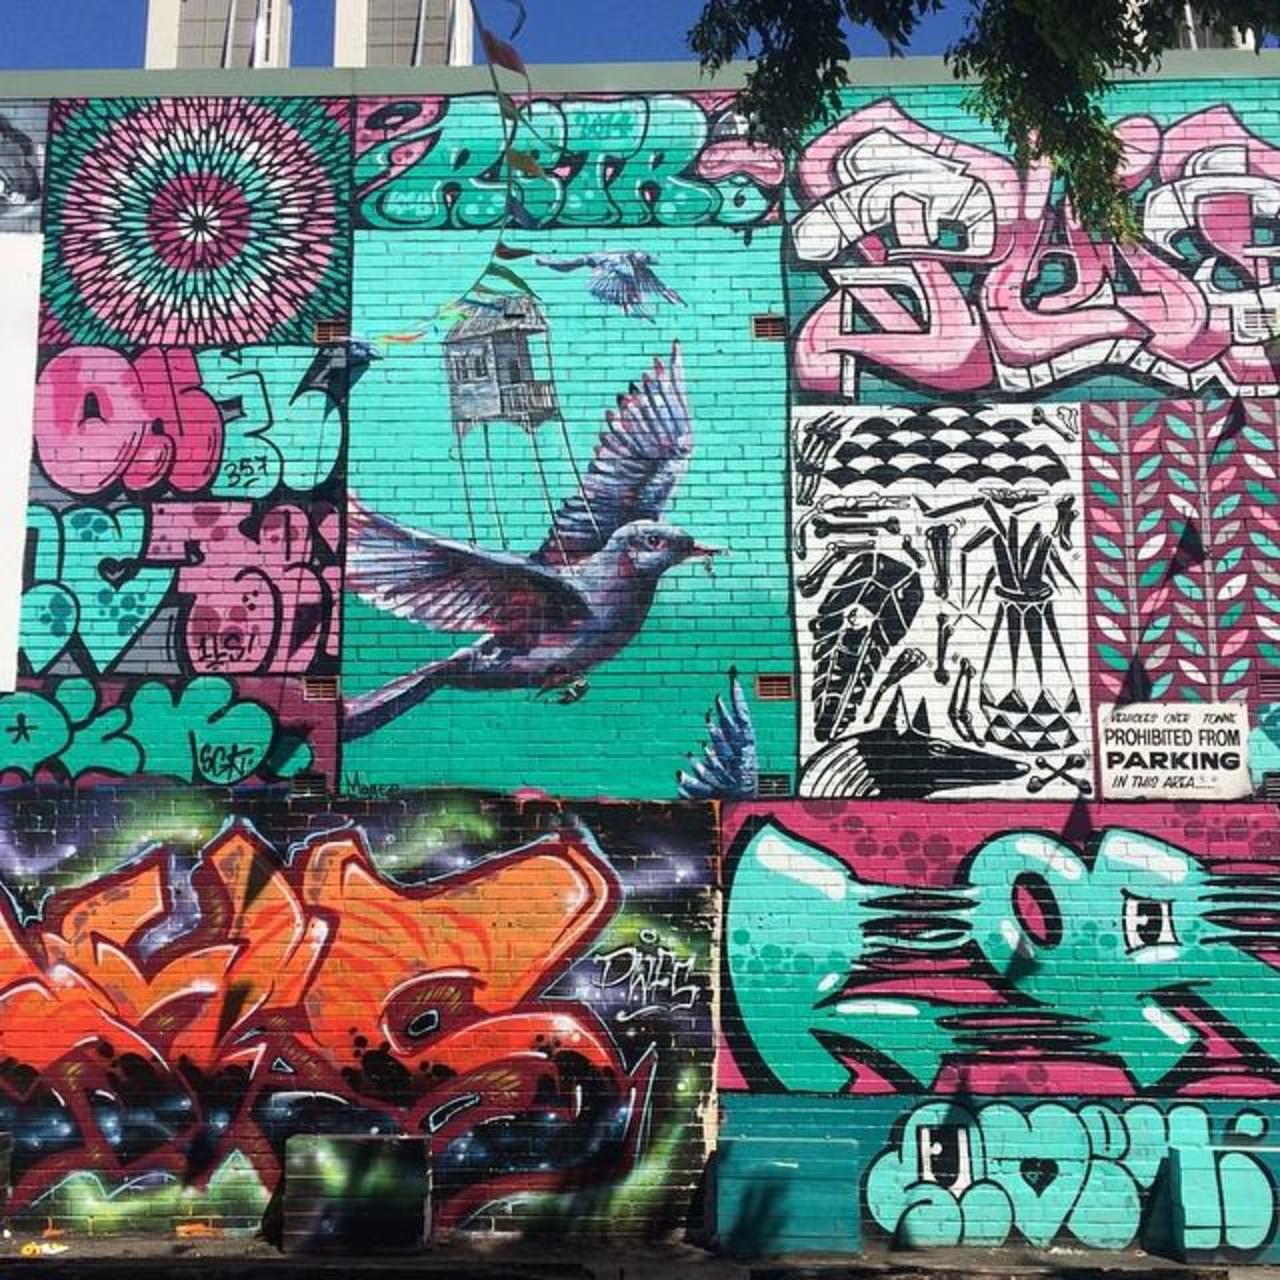 Big Wall at the Old Vic. #streetart #graffiti #walls #mural #instaart #streetartsydney #sydneystreetart #beastman #… http://t.co/qNl9eV8Ig9